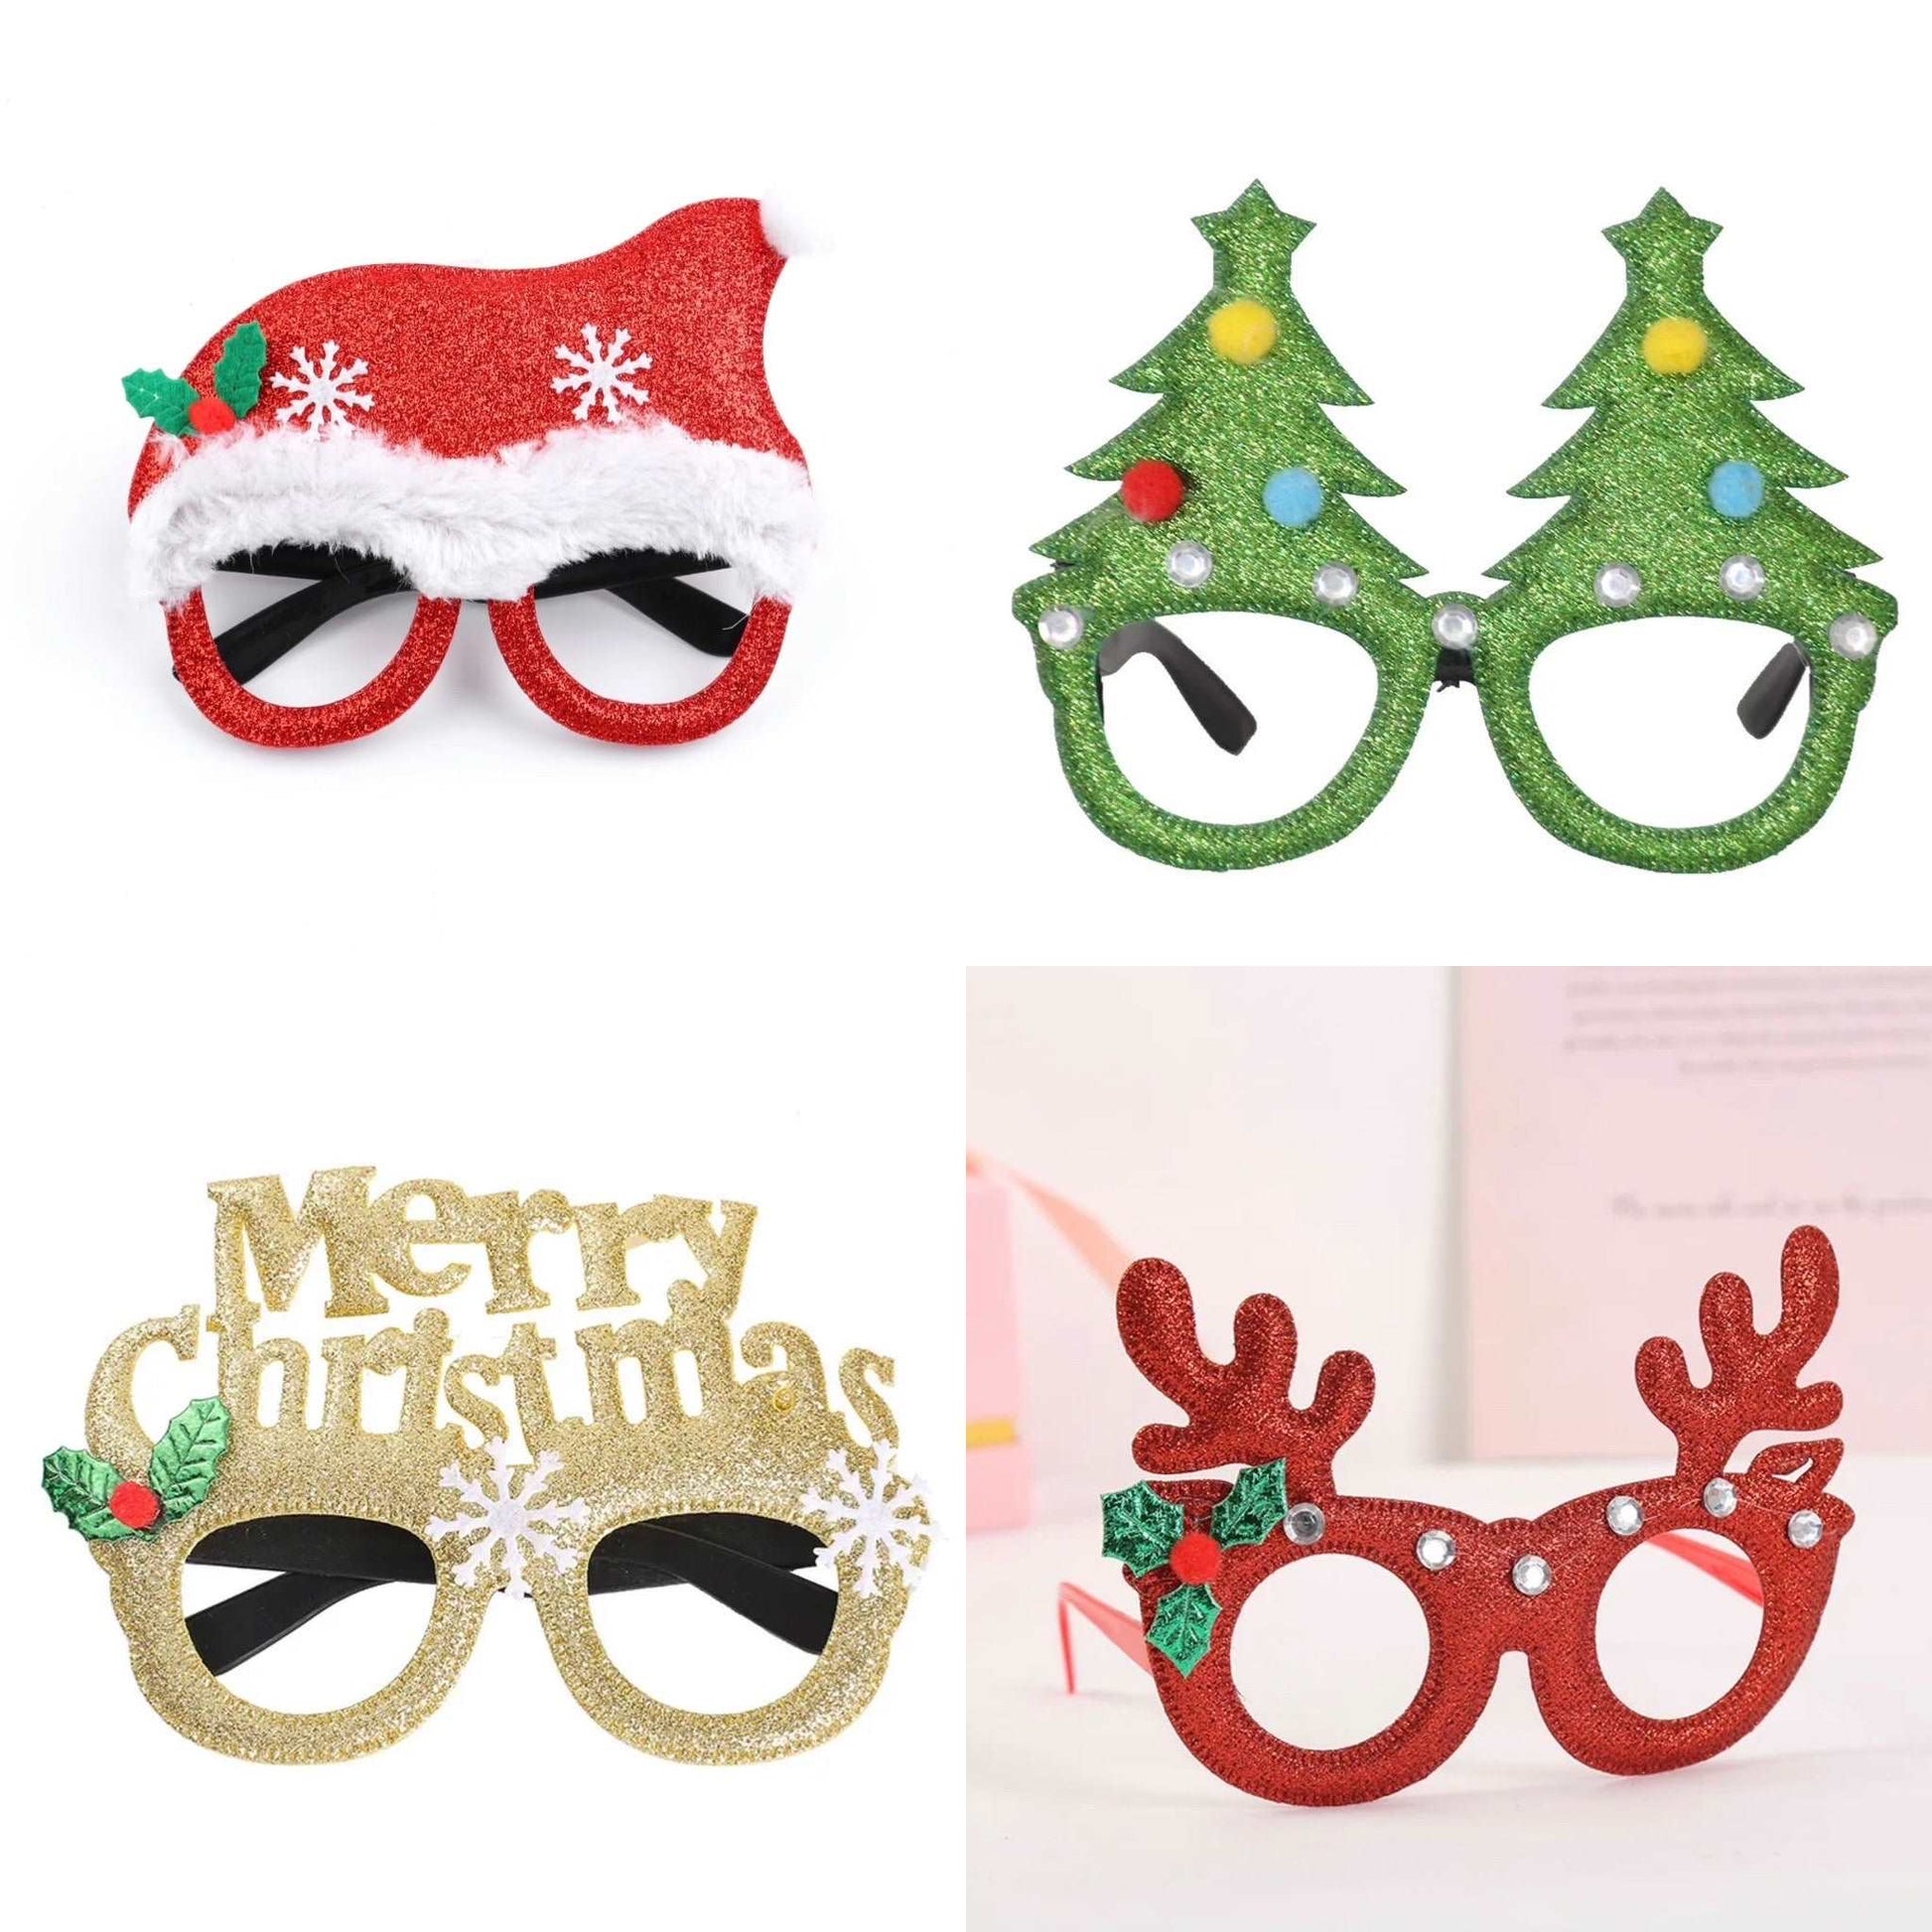 Novelty Christmas Glasses